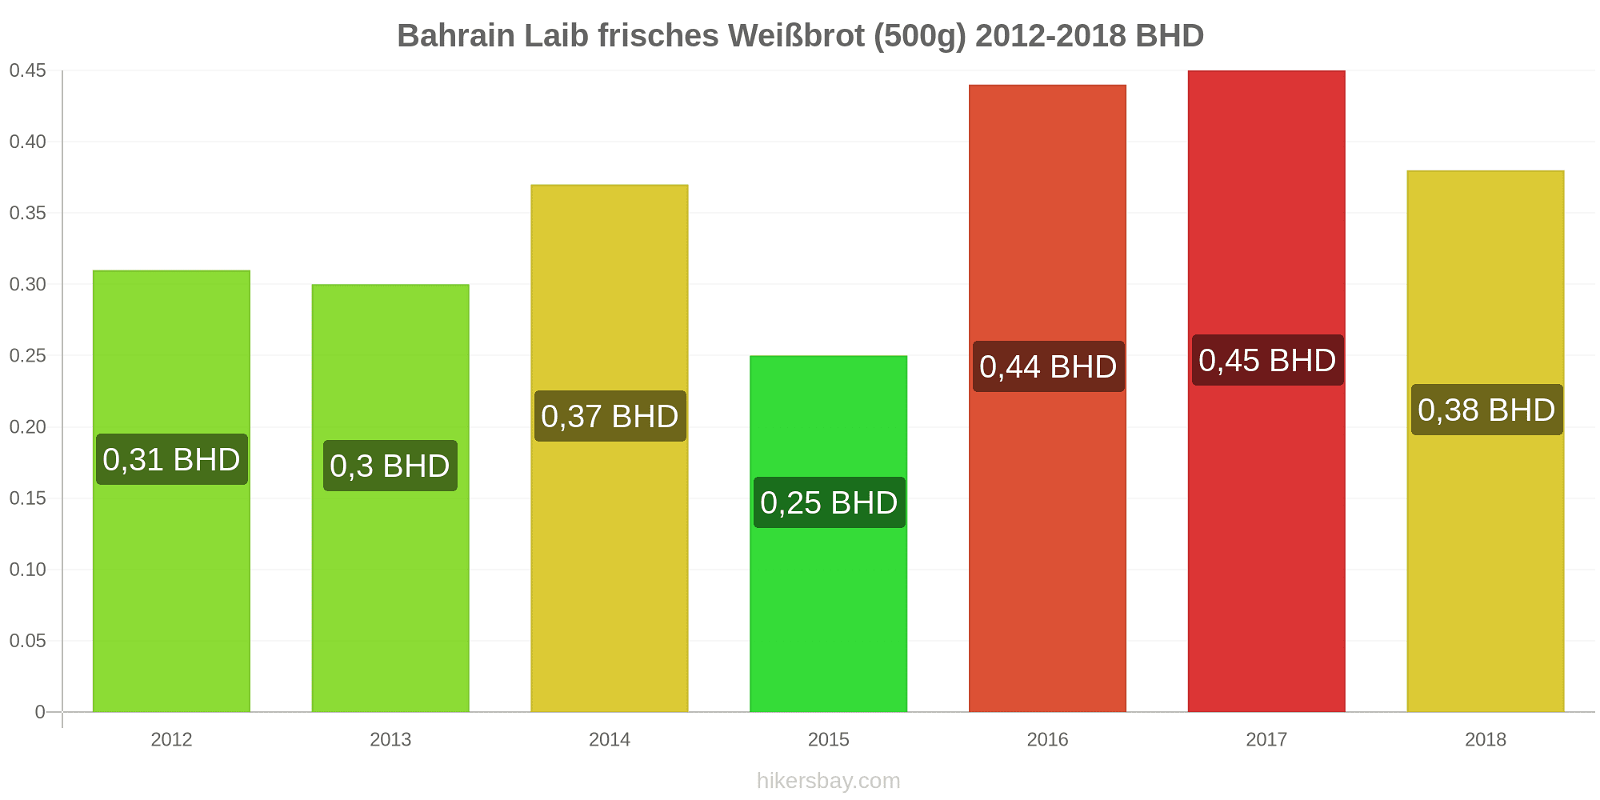 Bahrain Preisänderungen Ein Laib frisches Weißbrot (500g) hikersbay.com